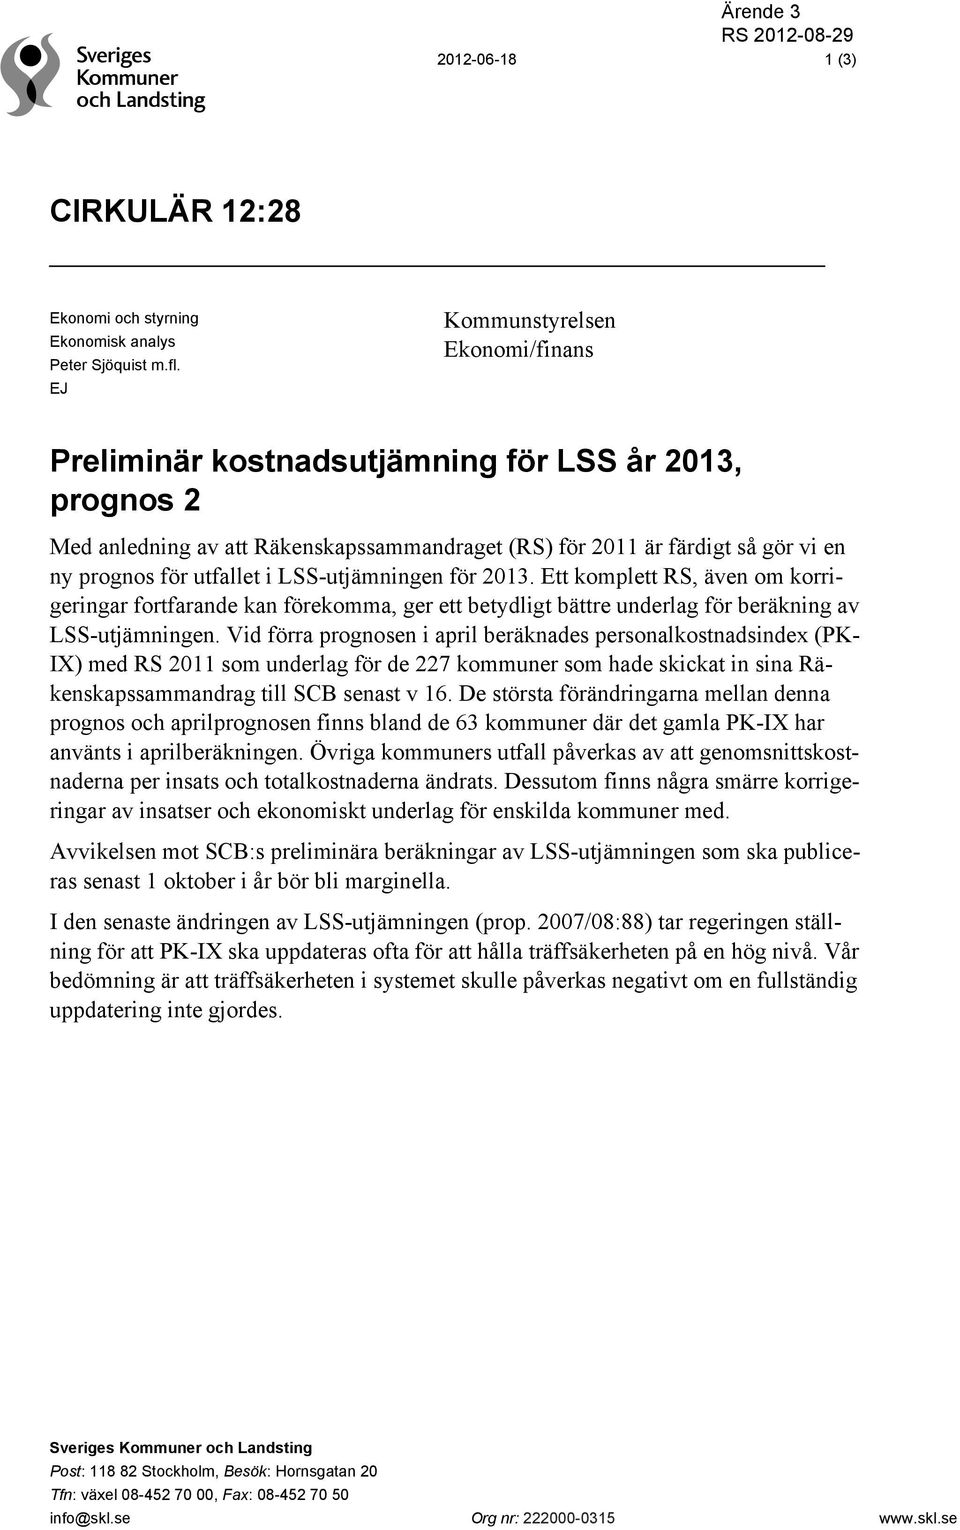 LSS-utjämningen för 2013. Ett komplett RS, även om korrigeringar fortfarande kan förekomma, ger ett betydligt bättre underlag för beräkning av LSS-utjämningen.